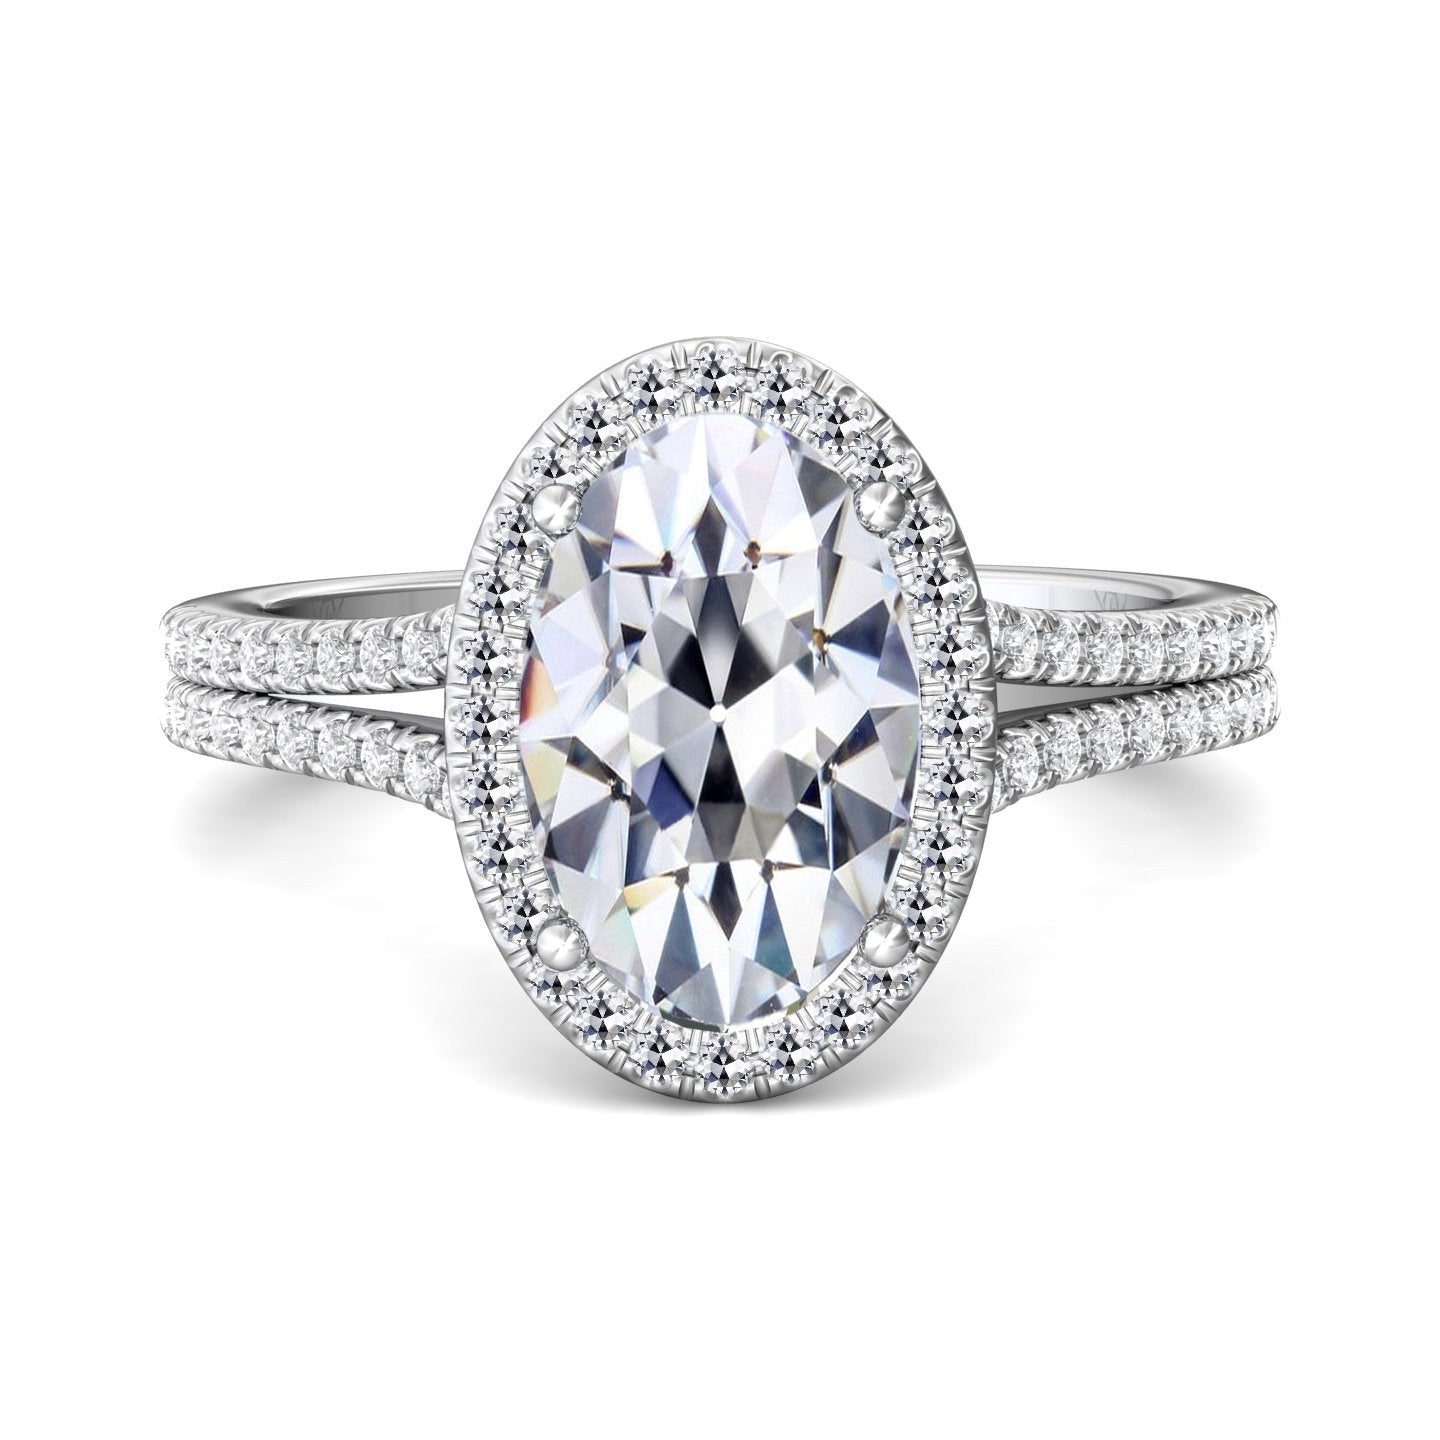 Halo anello di fidanzamento ovale vecchio miniera taglio diamante gambo diviso 8 carati - harrychadent.it